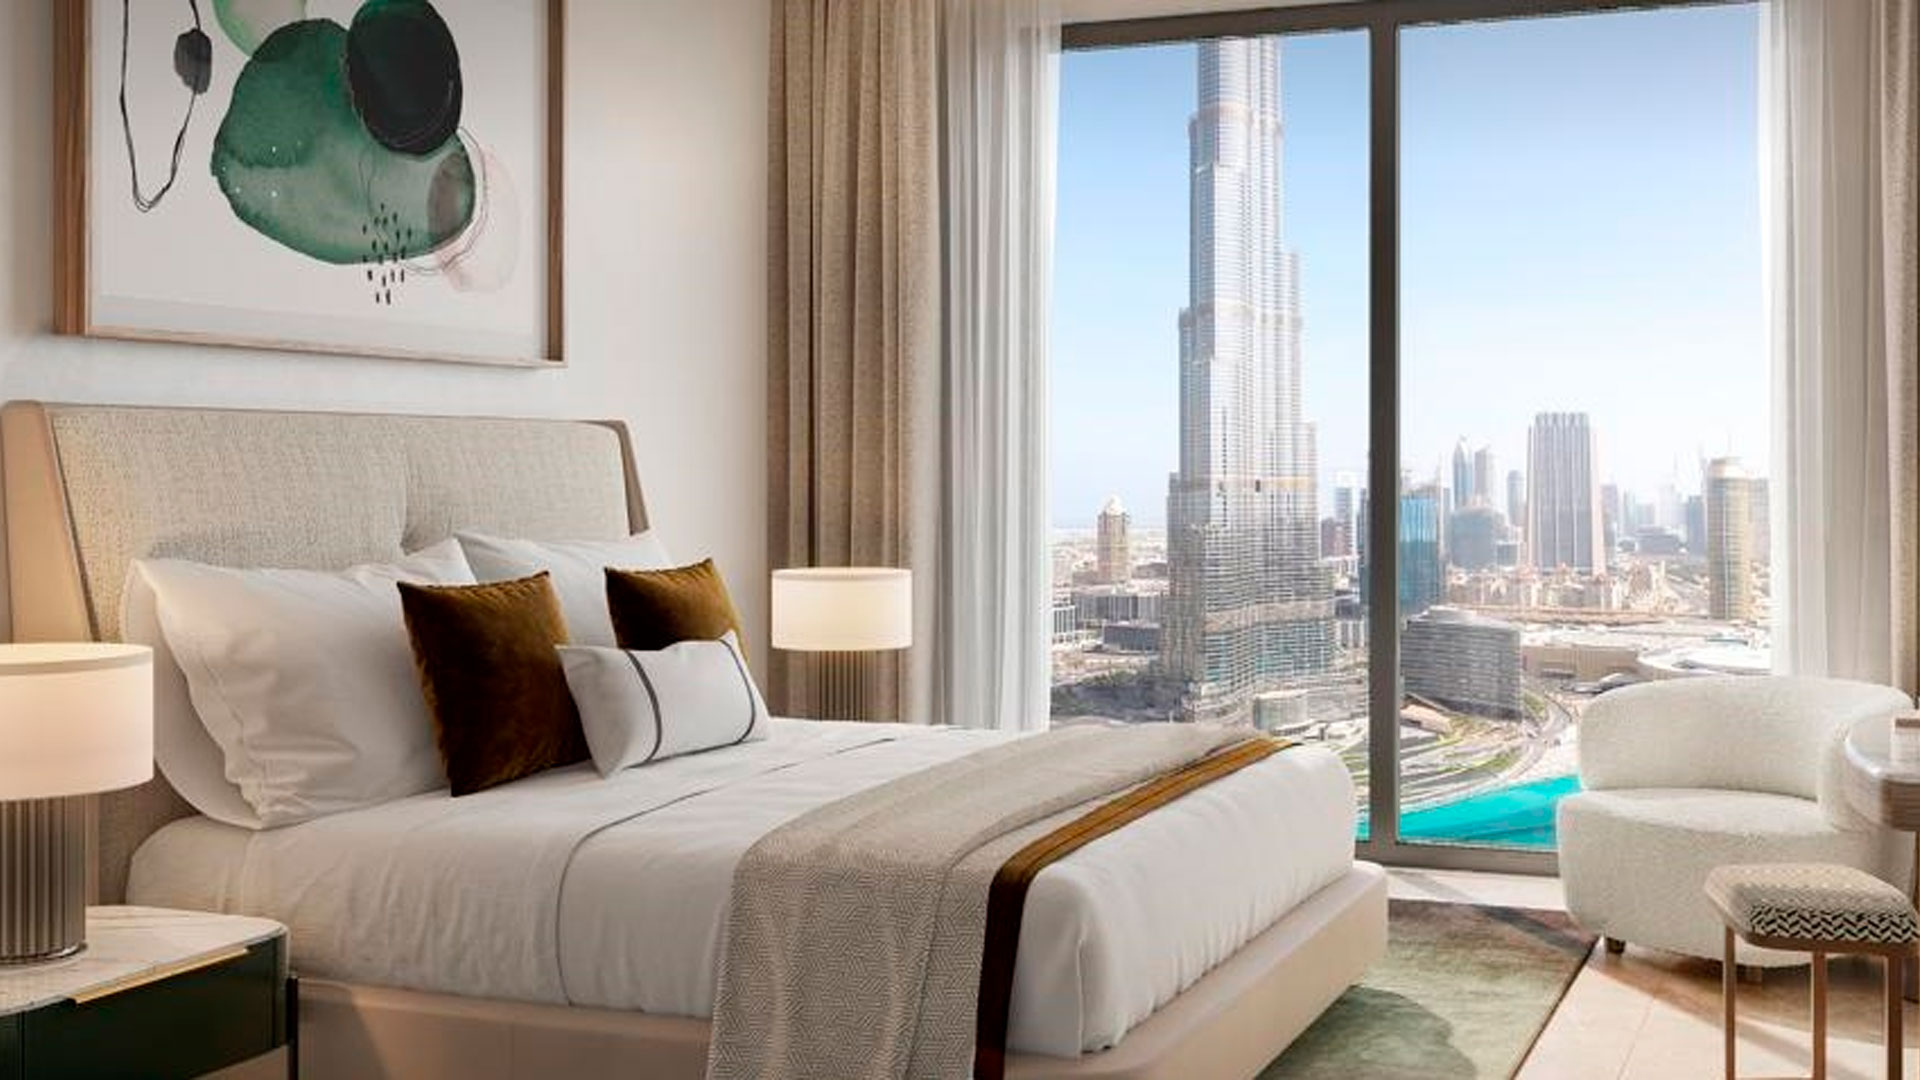 ST.REGIS RESIDENCES by Emaar Properties in Downtown Dubai, Dubai, UAE5